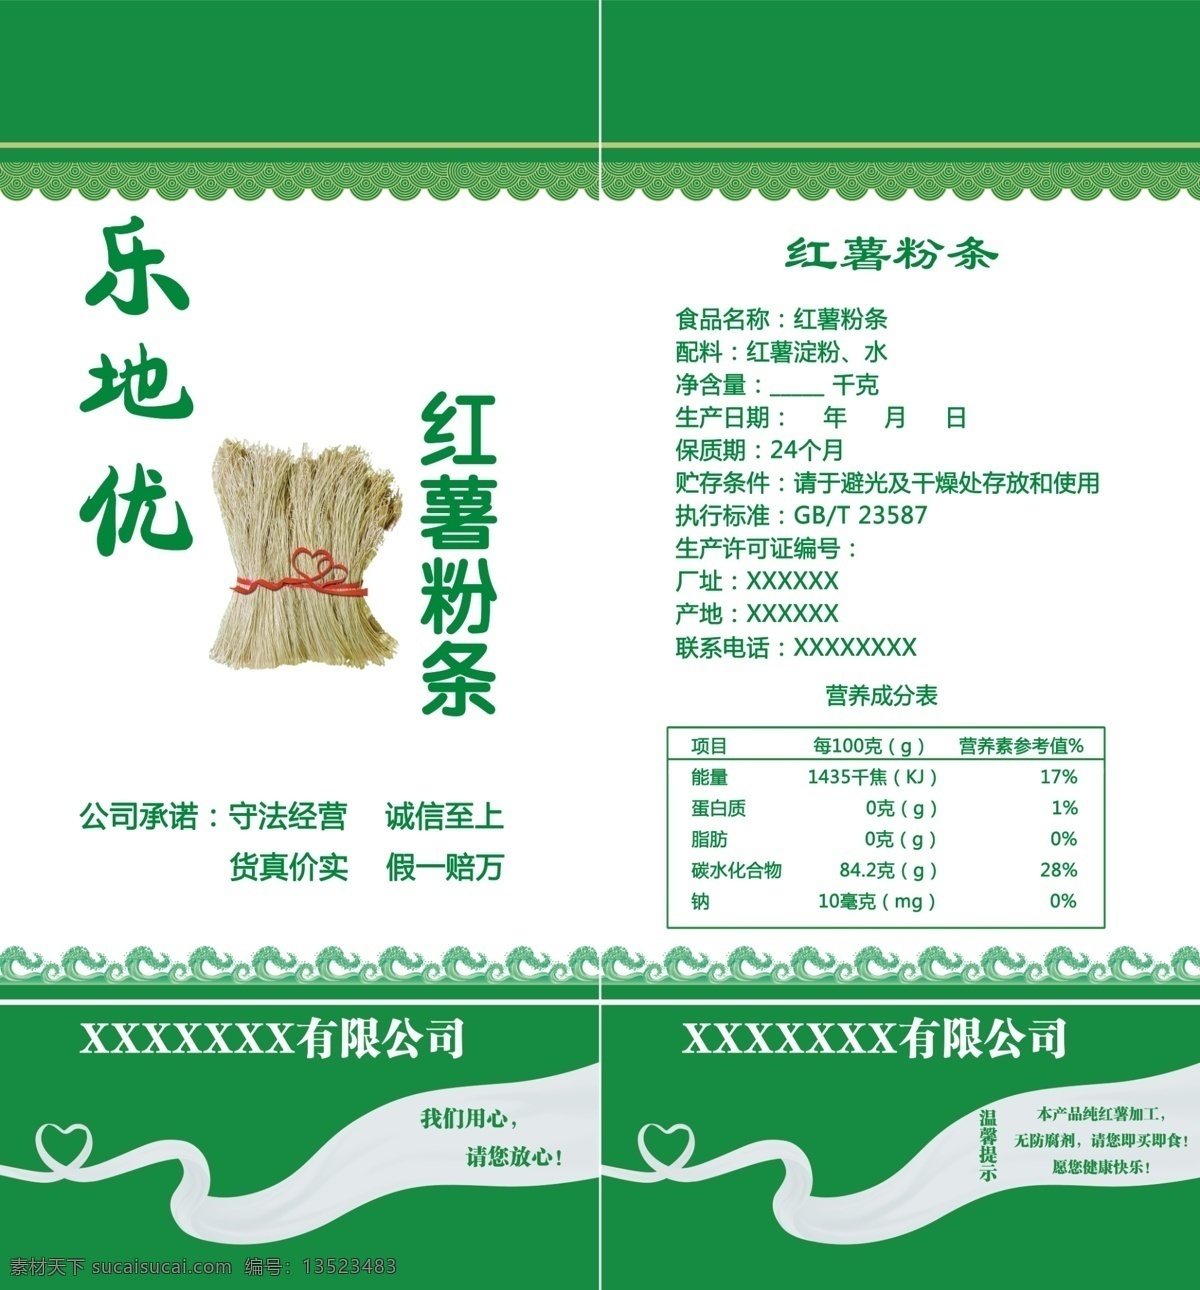 红薯 粉条 包装袋 红薯粉条 绿色食品 包装设计 广告设计模板 源文件